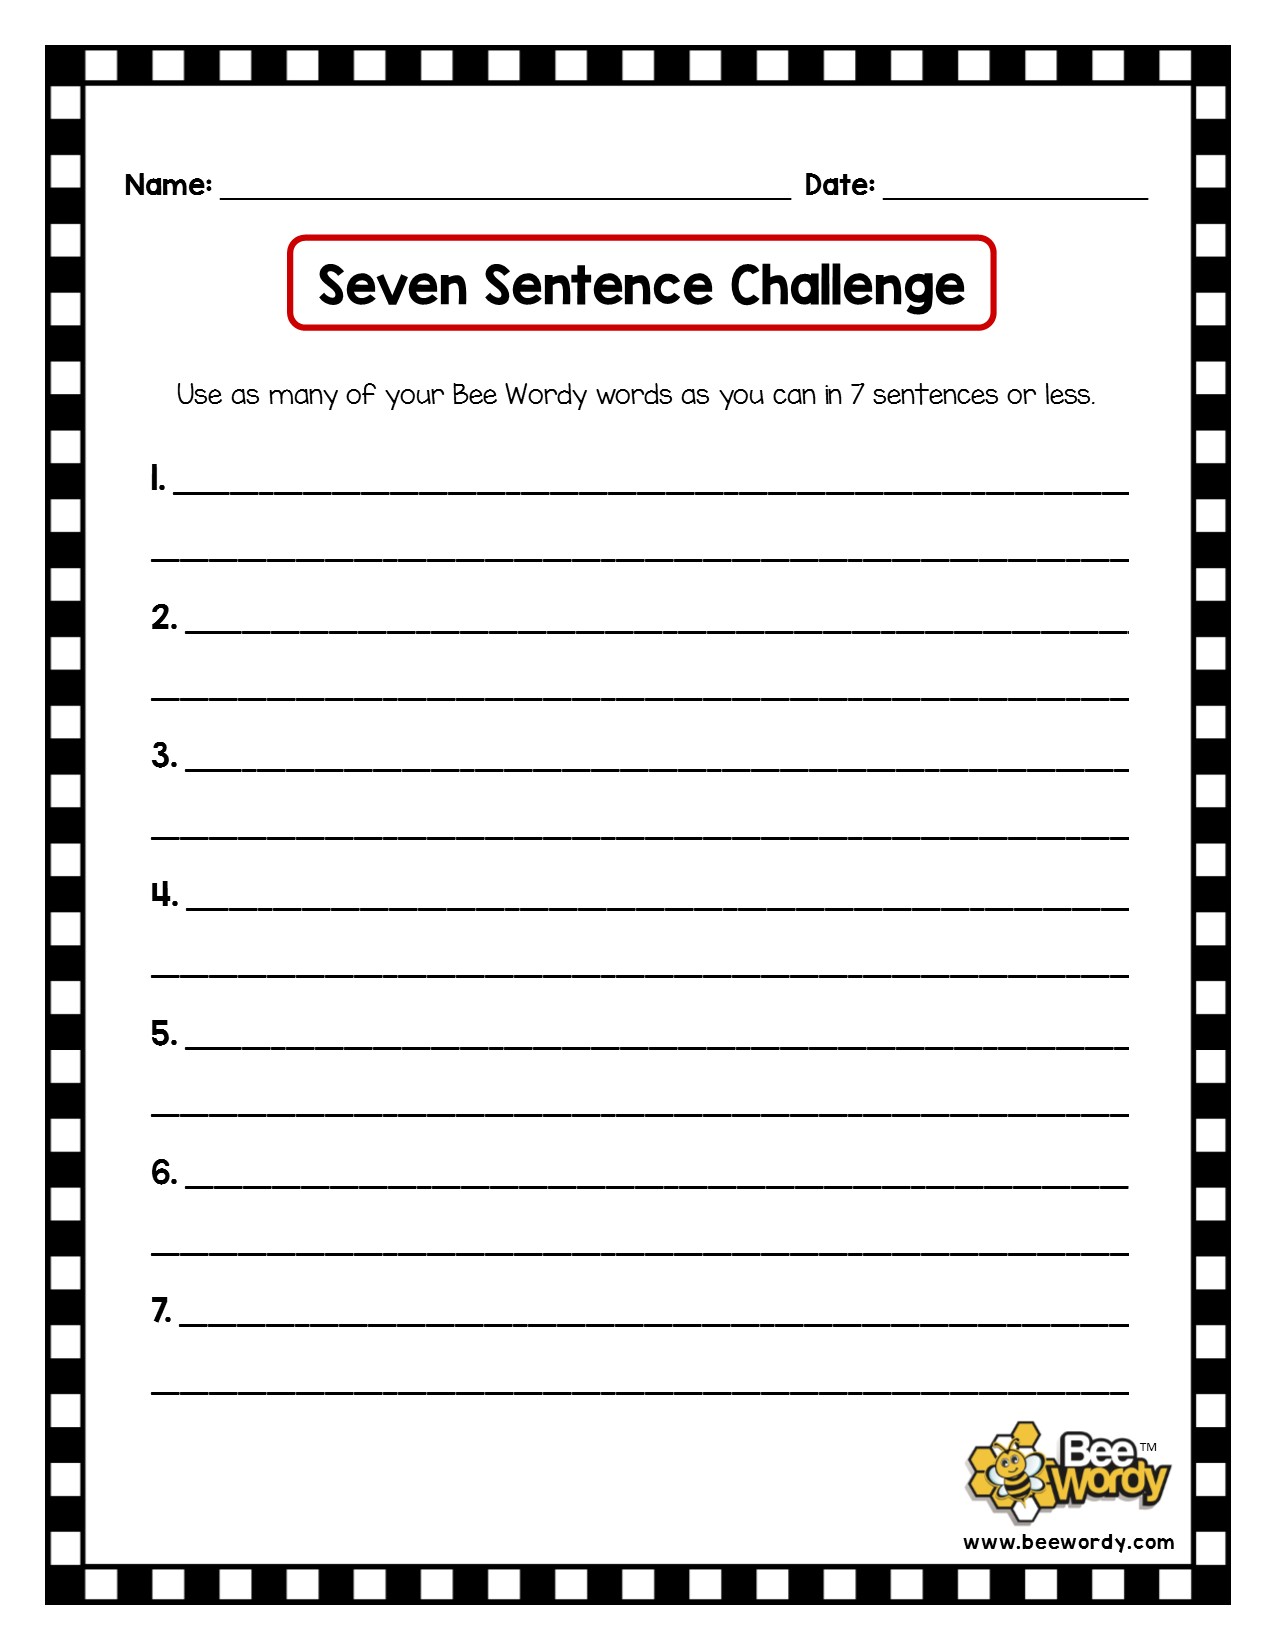 BW Seven Sentence Challenge.jpg